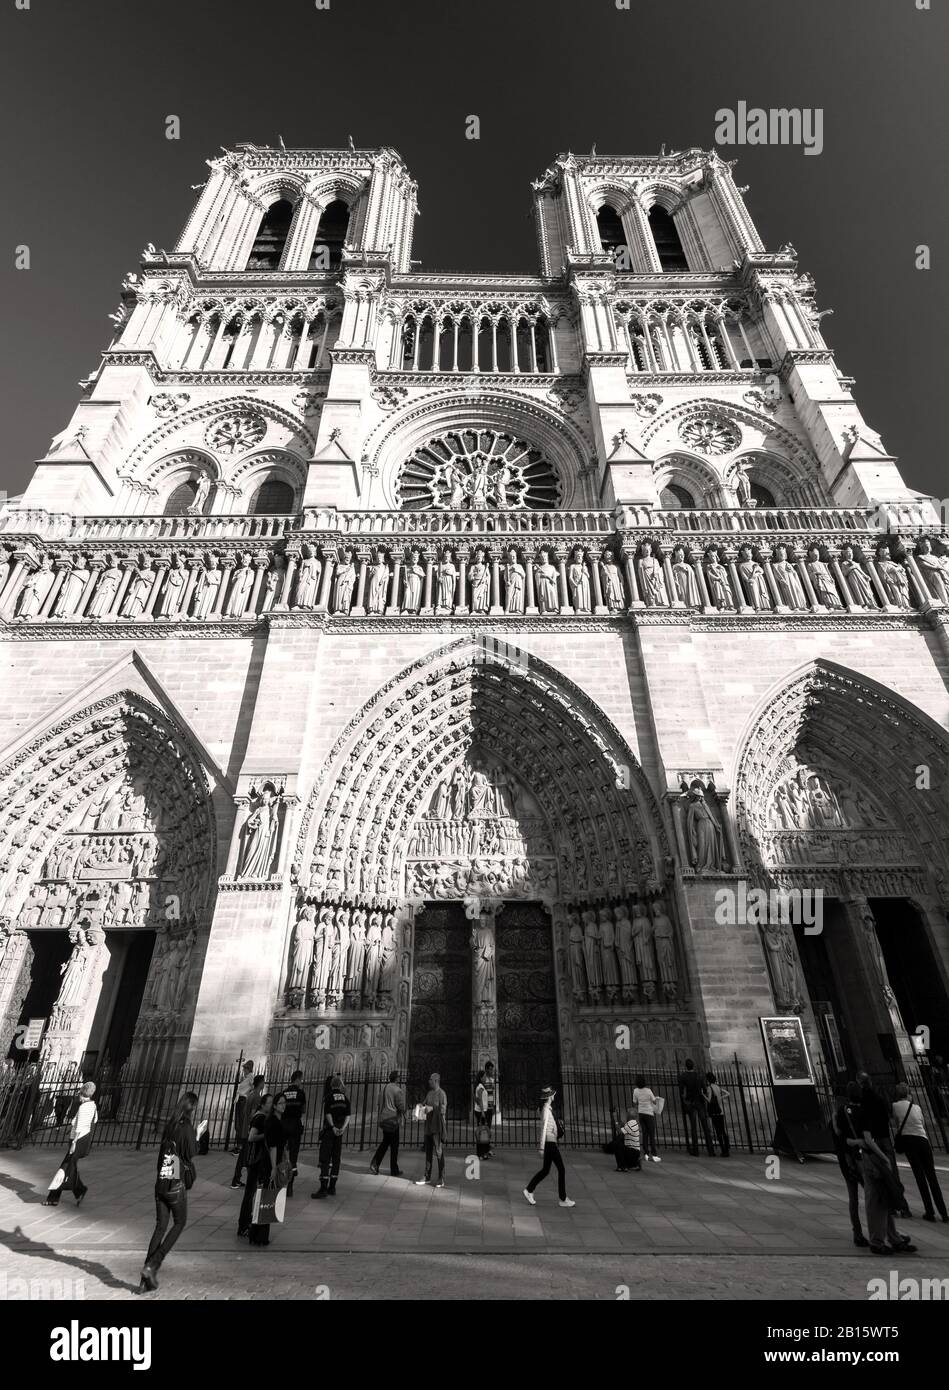 París - 24 DE SEPTIEMBRE: Turistas que visitan la Catedral de Notre Dame de París el 24 de septiembre de 2013. Notre Dame es uno de los mejores destinos turísticos Foto de stock